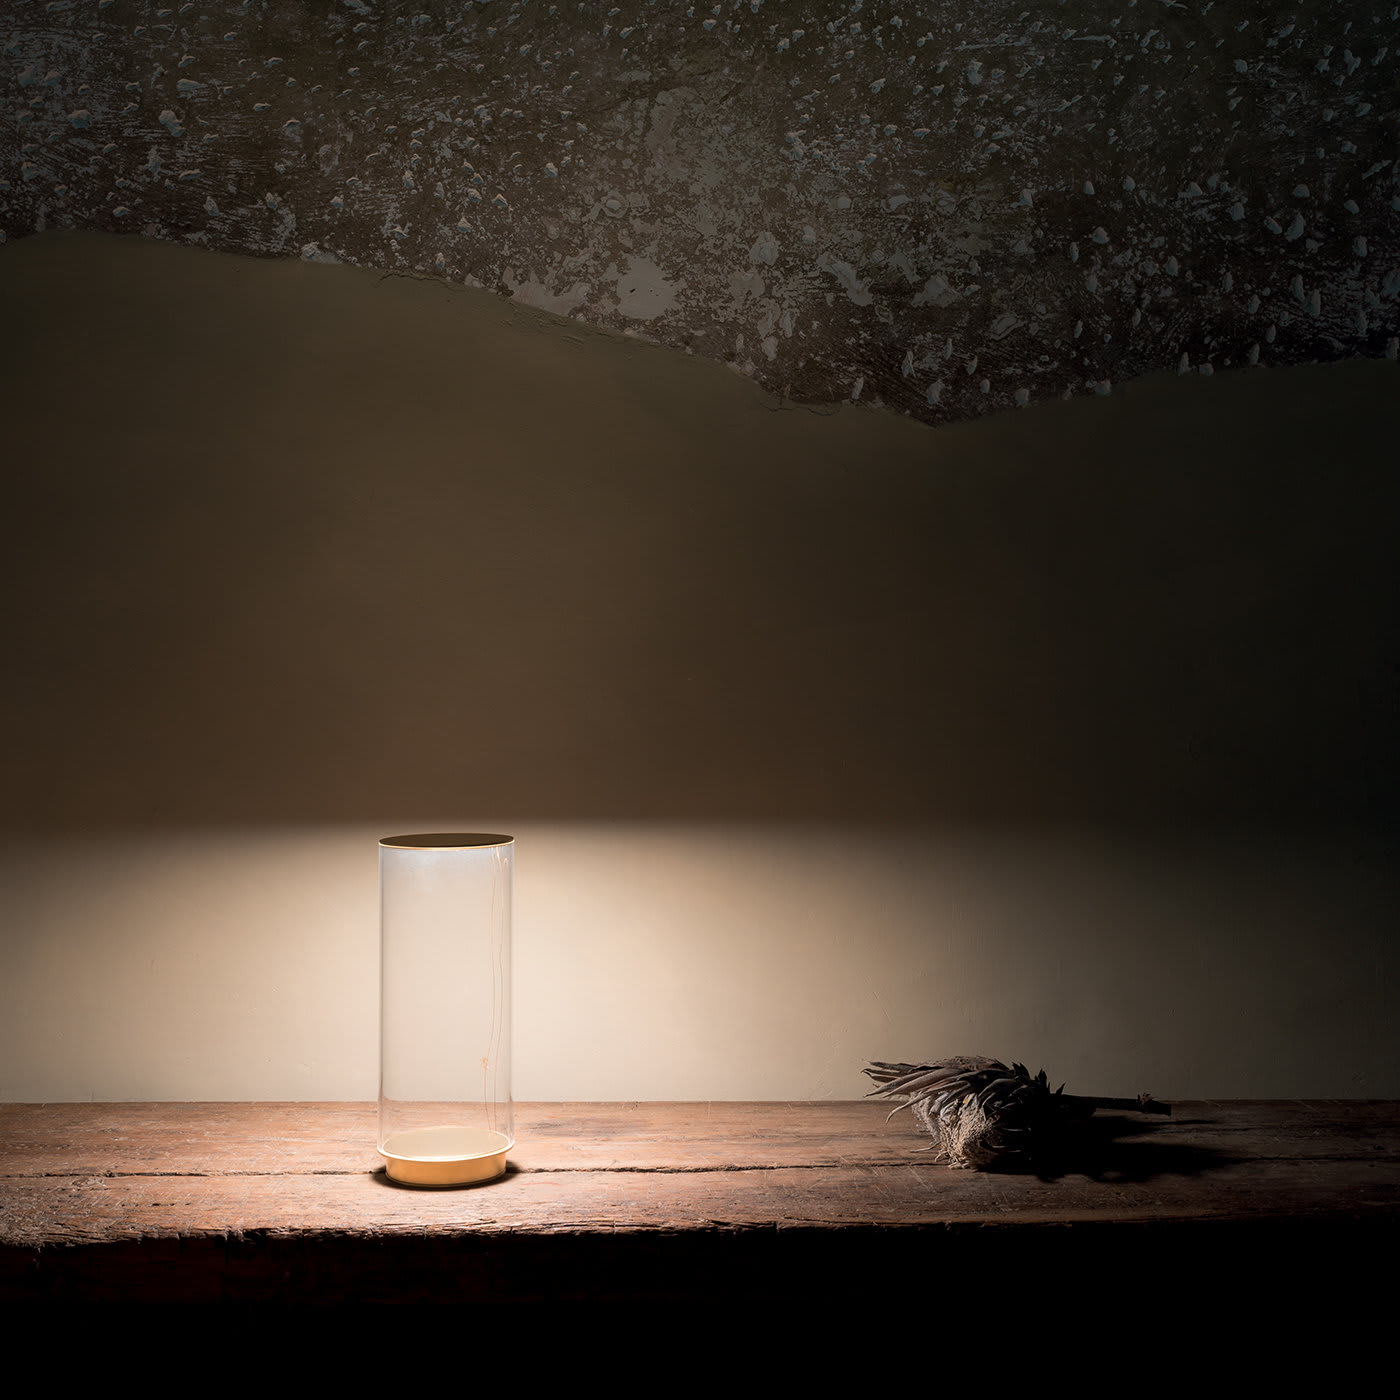 Fatua Table Lamp by Emanuel Gargano - Emanuel Gargano